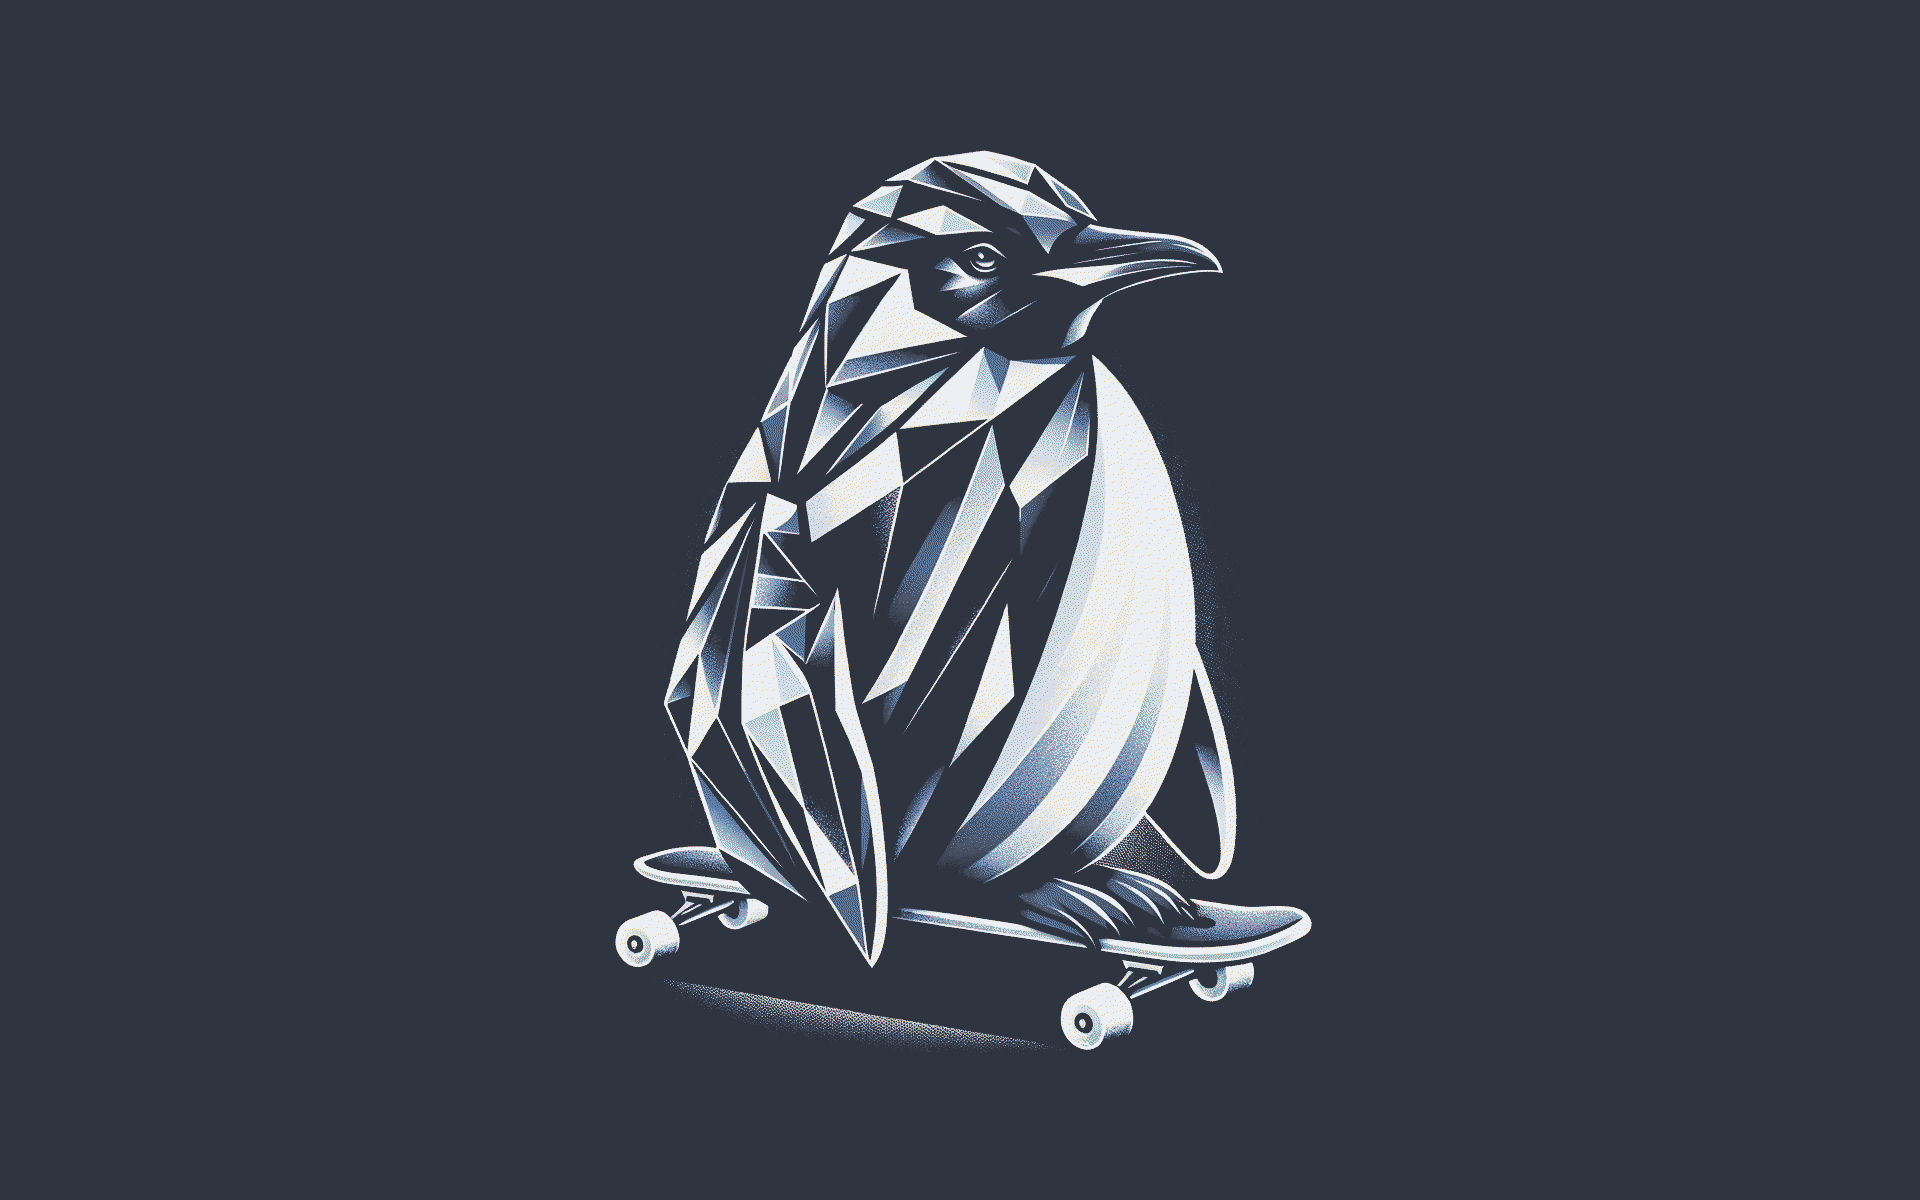 Linux Simple Background Minimalism Penguins Animals Skateboard Peak Digital Art 1920x1200